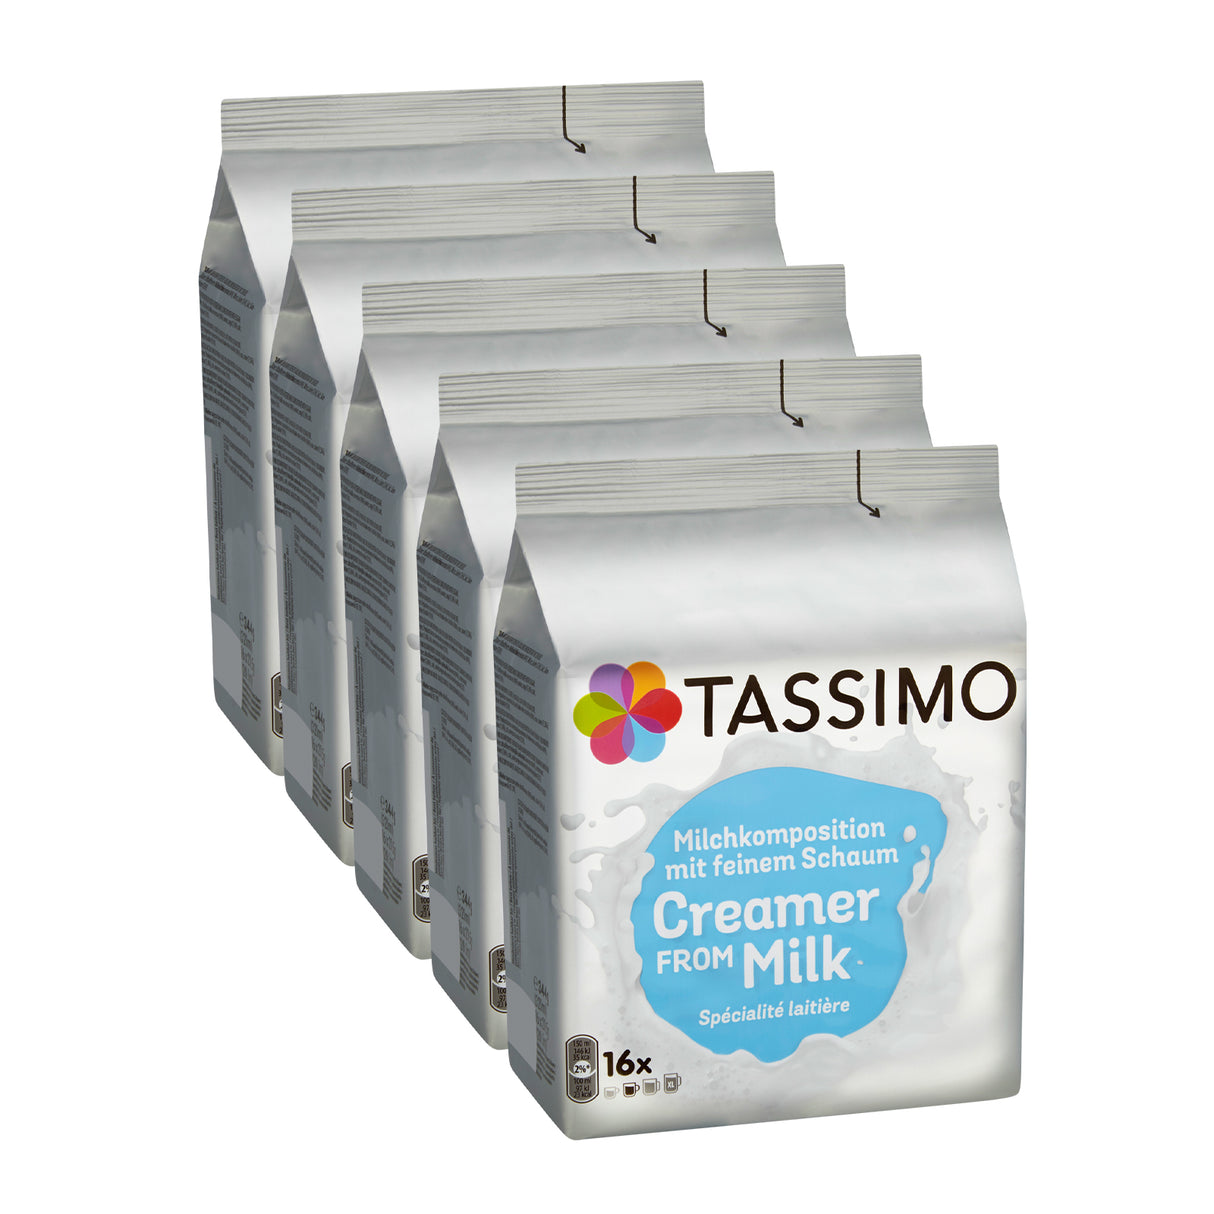 Tassimo Creamer From Milk 5pack